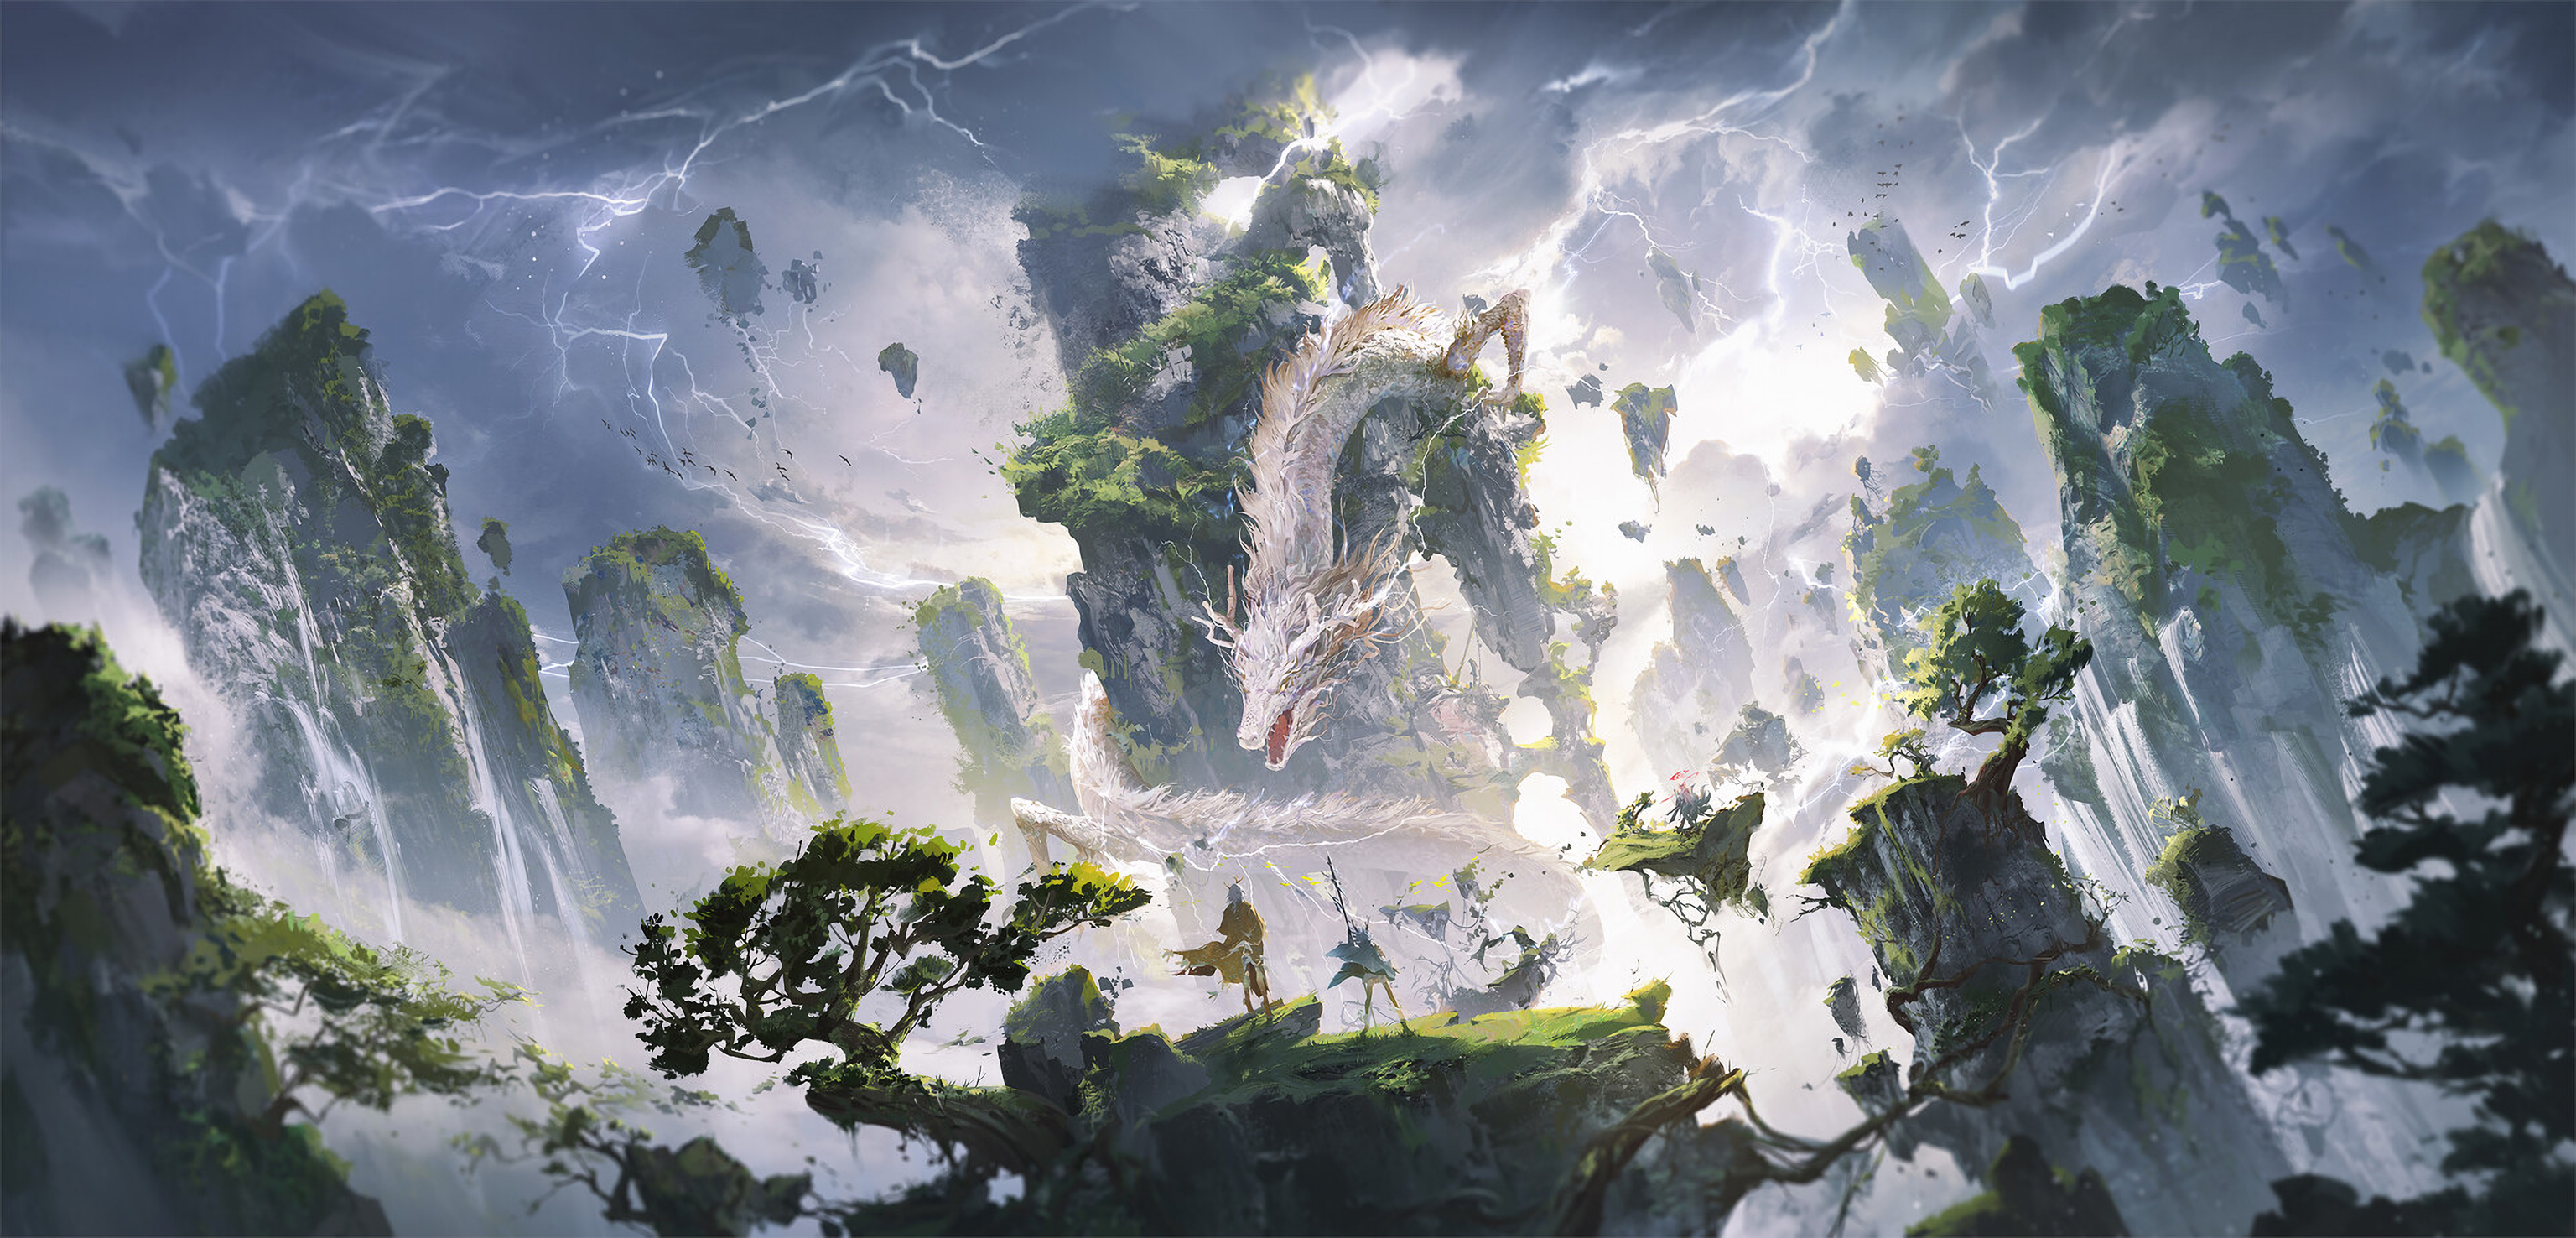 General 3072x1476 Ying Yi illustration dragon mountains pine trees lightning digital art